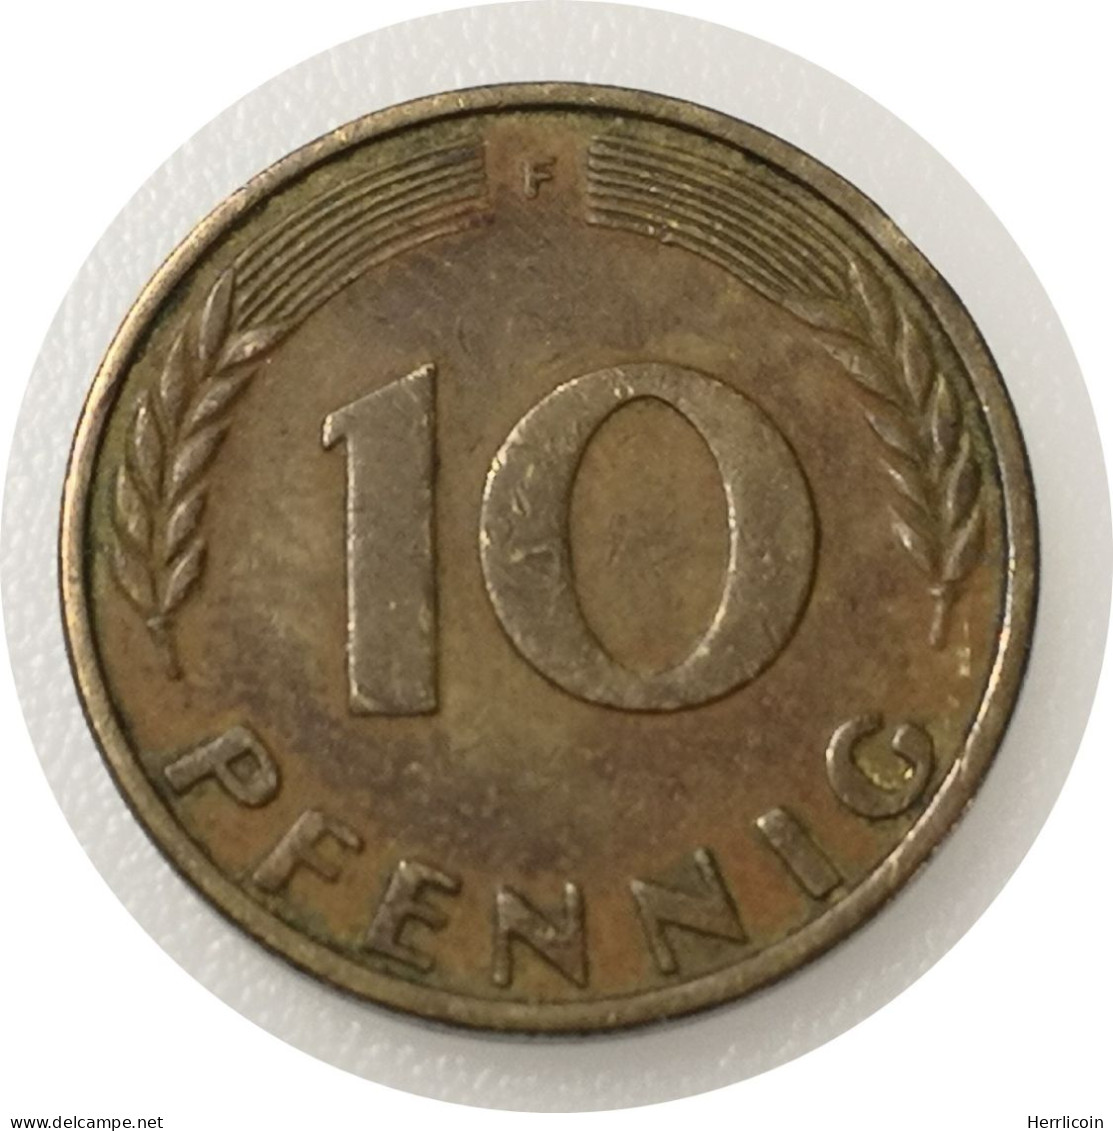 Monnaie Allemagne - 1950 F - 10 Pfennig - 10 Pfennig